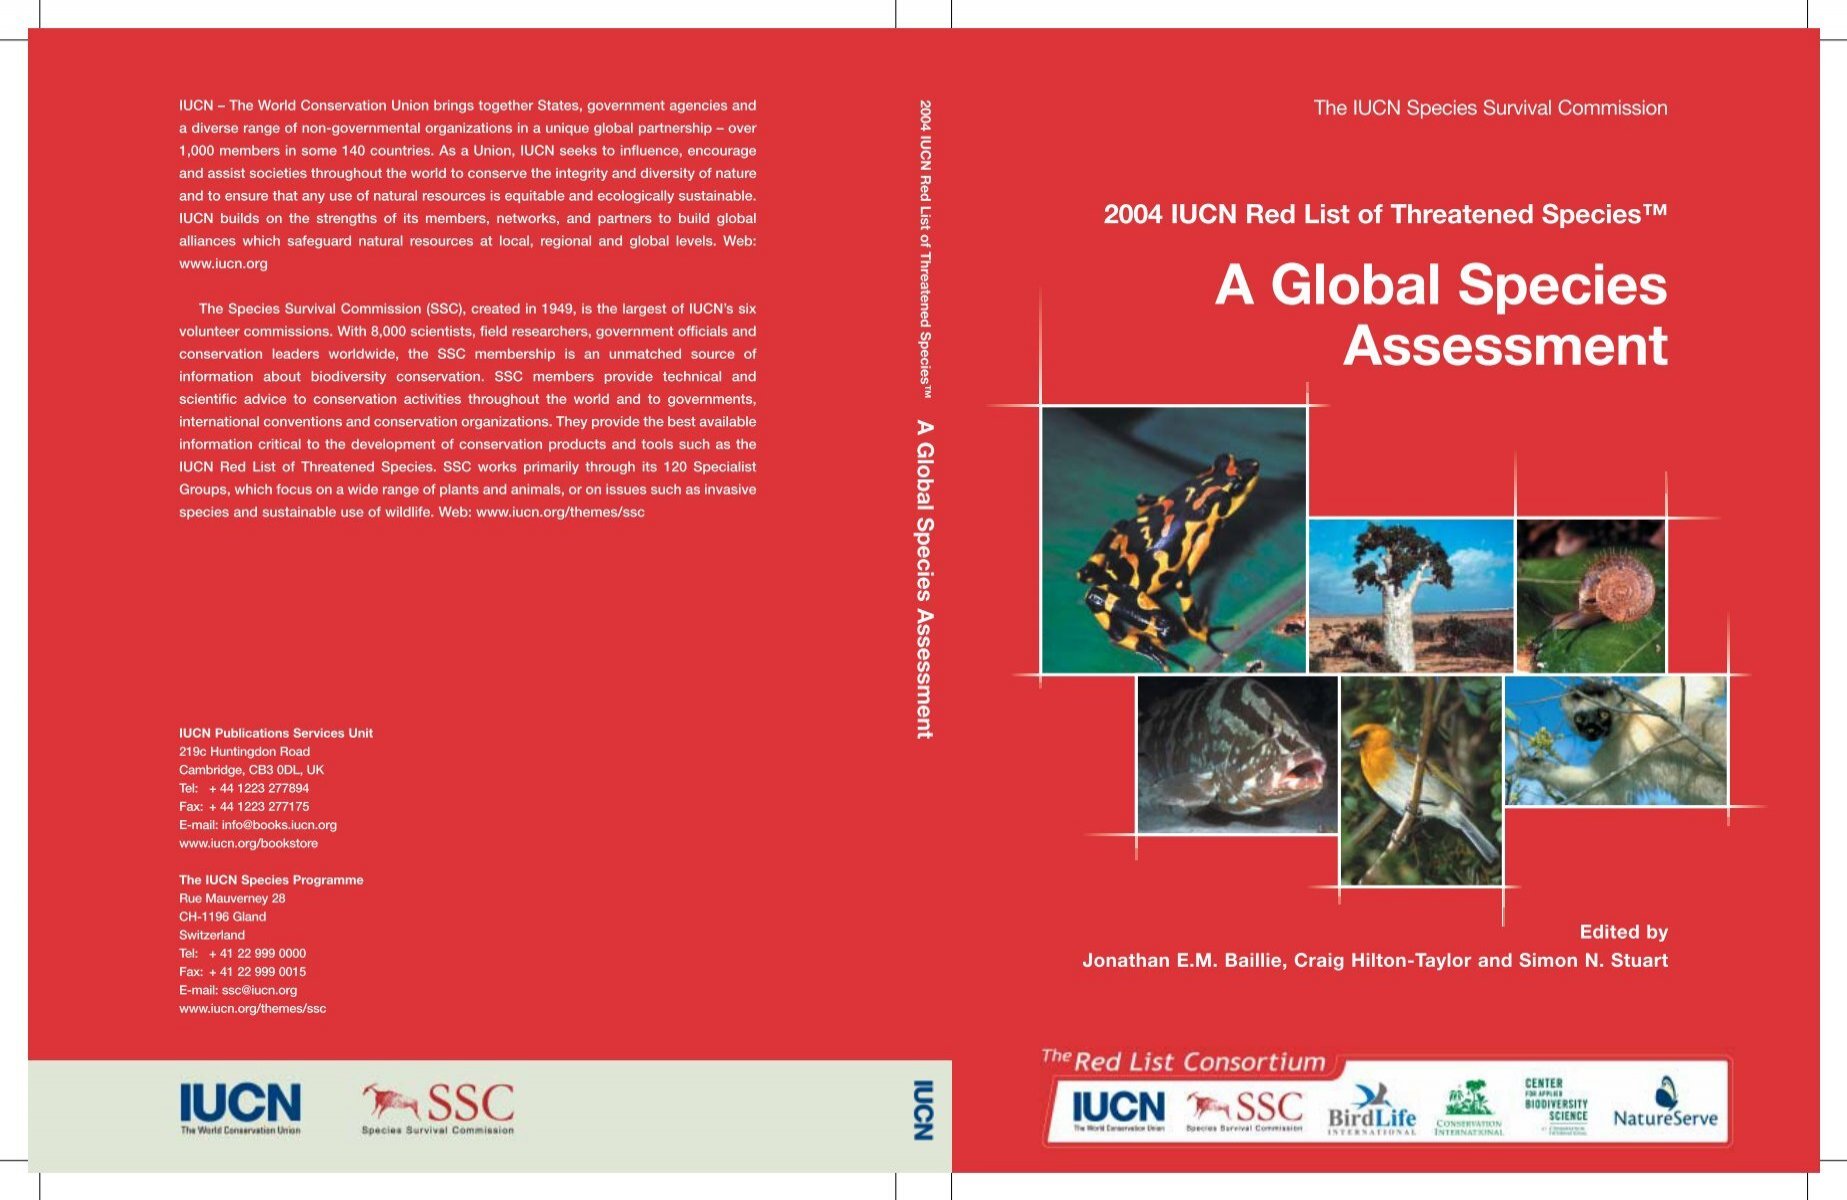 2004 IUCN Red List of Threatened Species - Instituto de